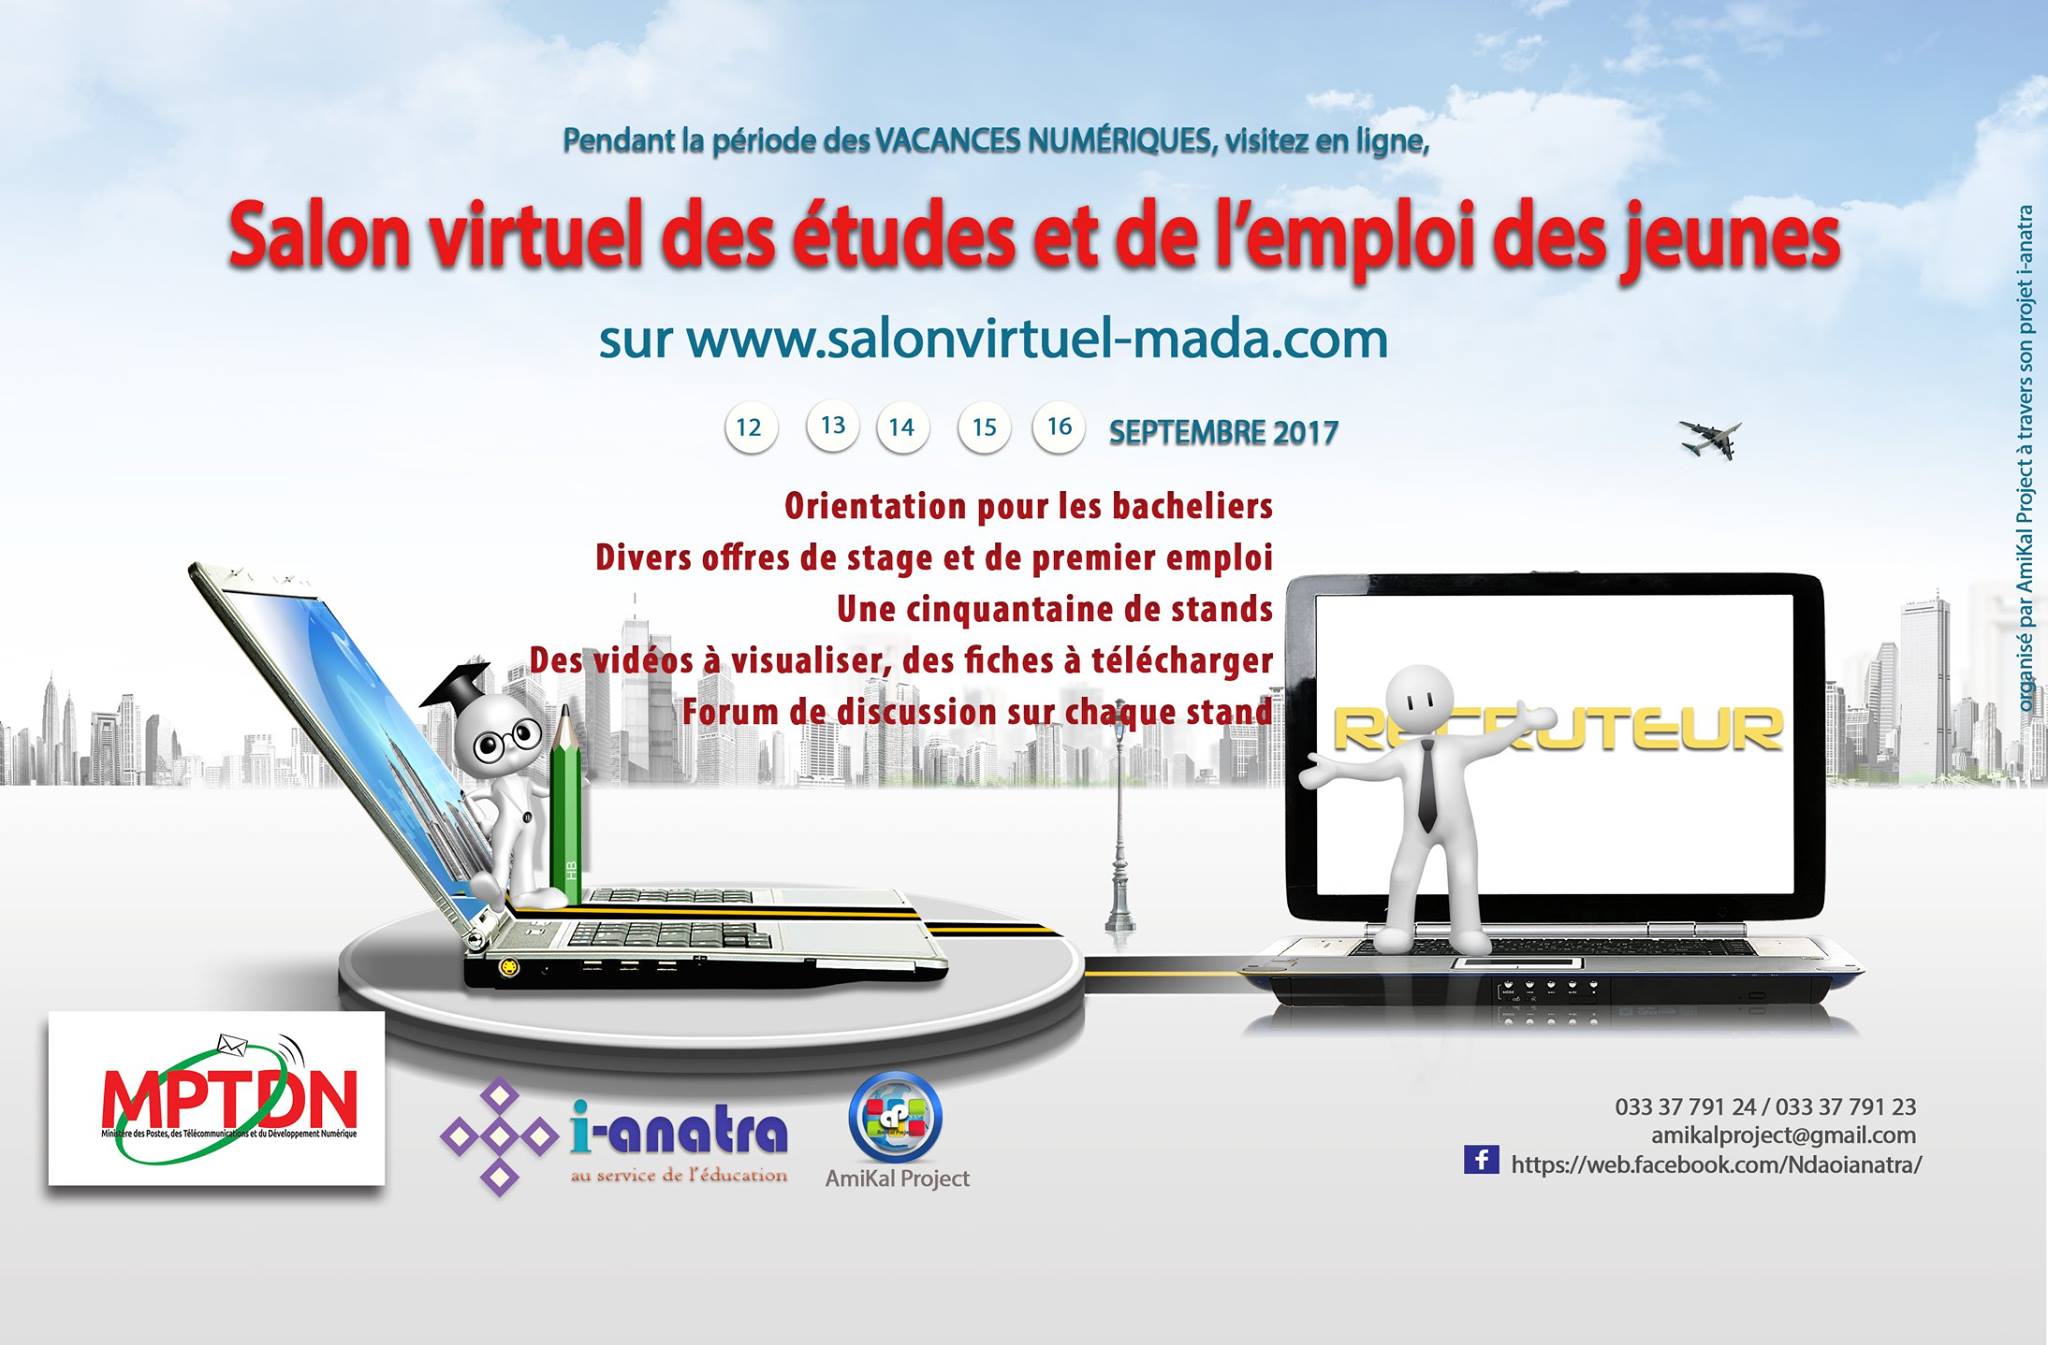 Le Salon virtuel des études et de l’emploi des jeunes : c’est demain !